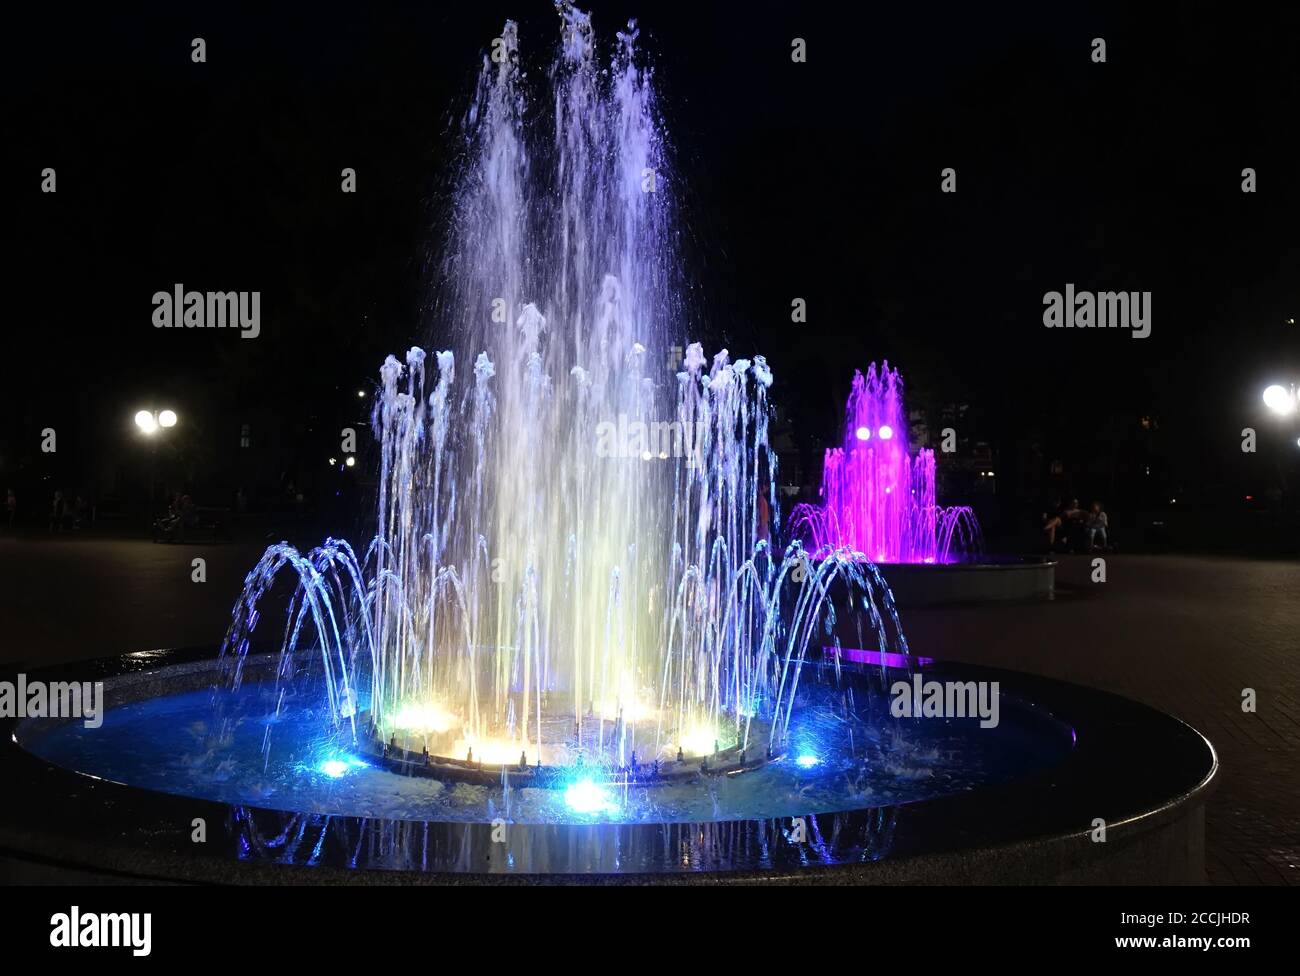 Leuchtbrunnen in Tschernihiv, Ukraine Stockfoto